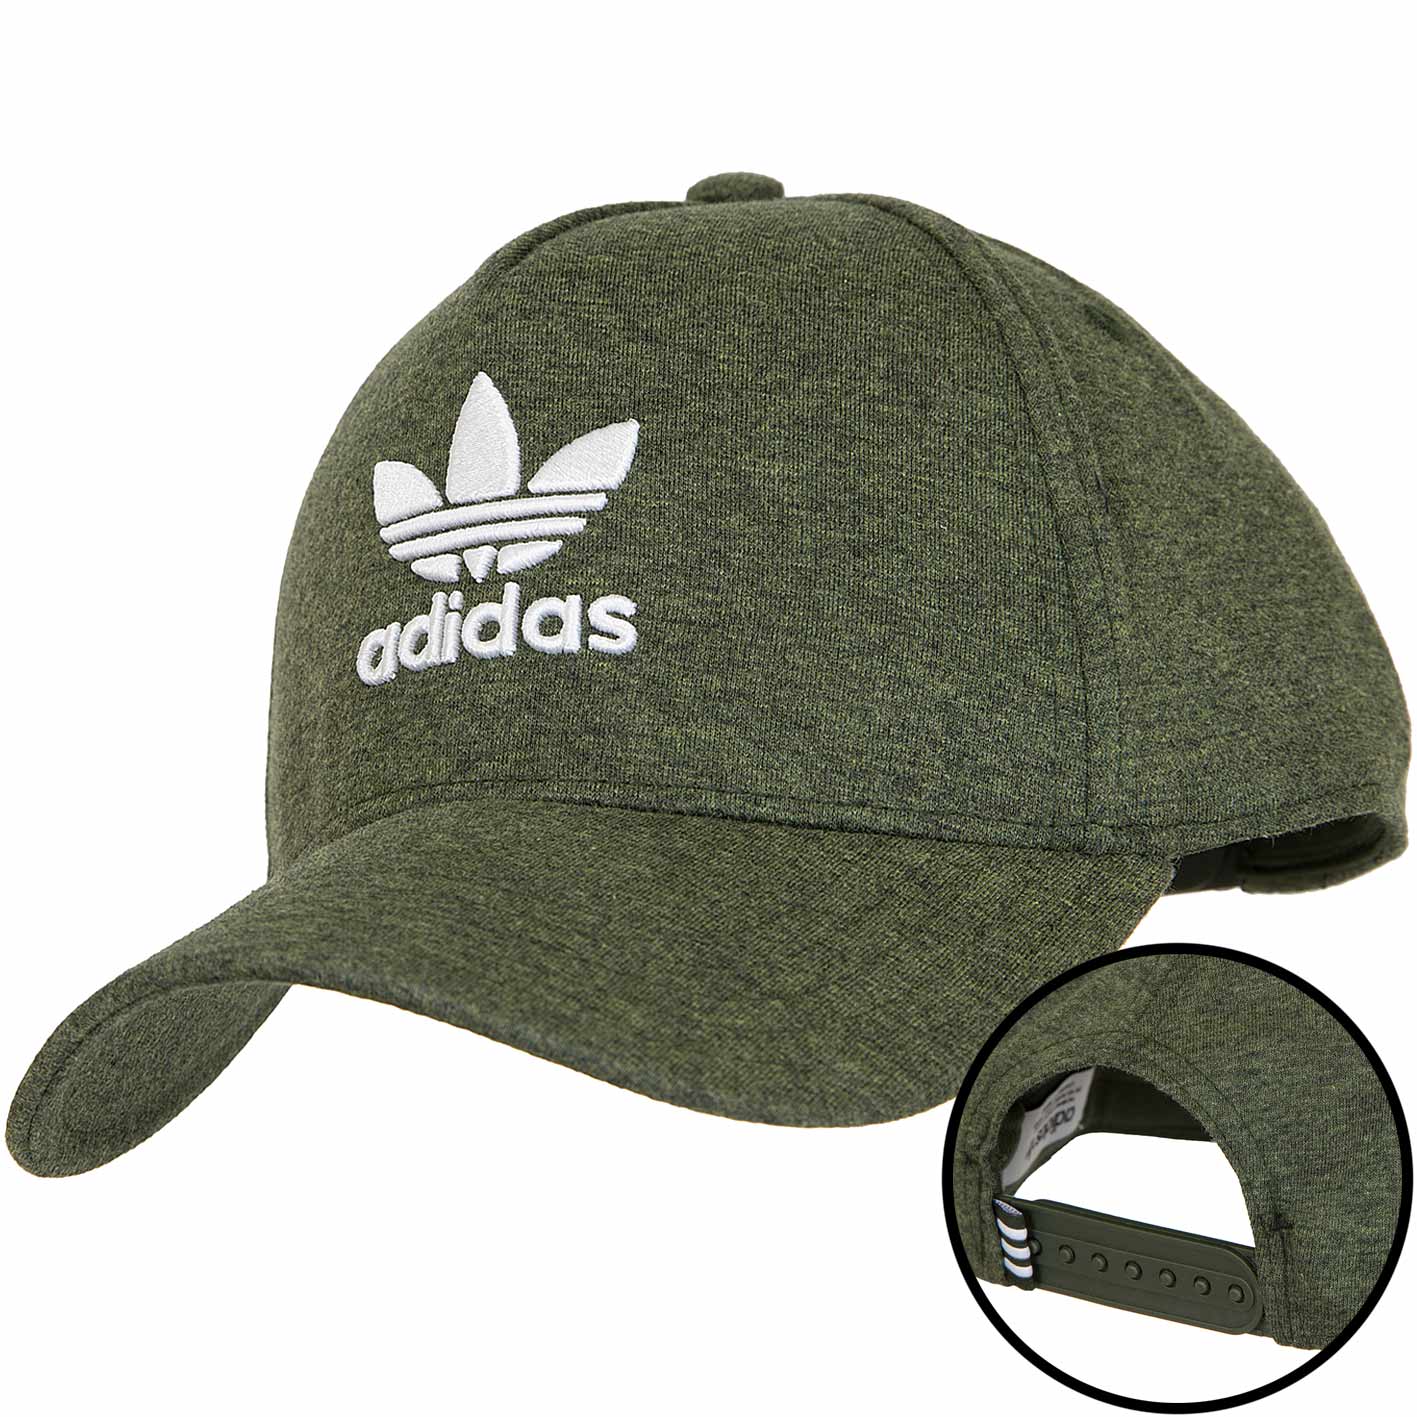 ☆ Adidas Originals Snapback Cap Aframe Melange oliv - hier bestellen!